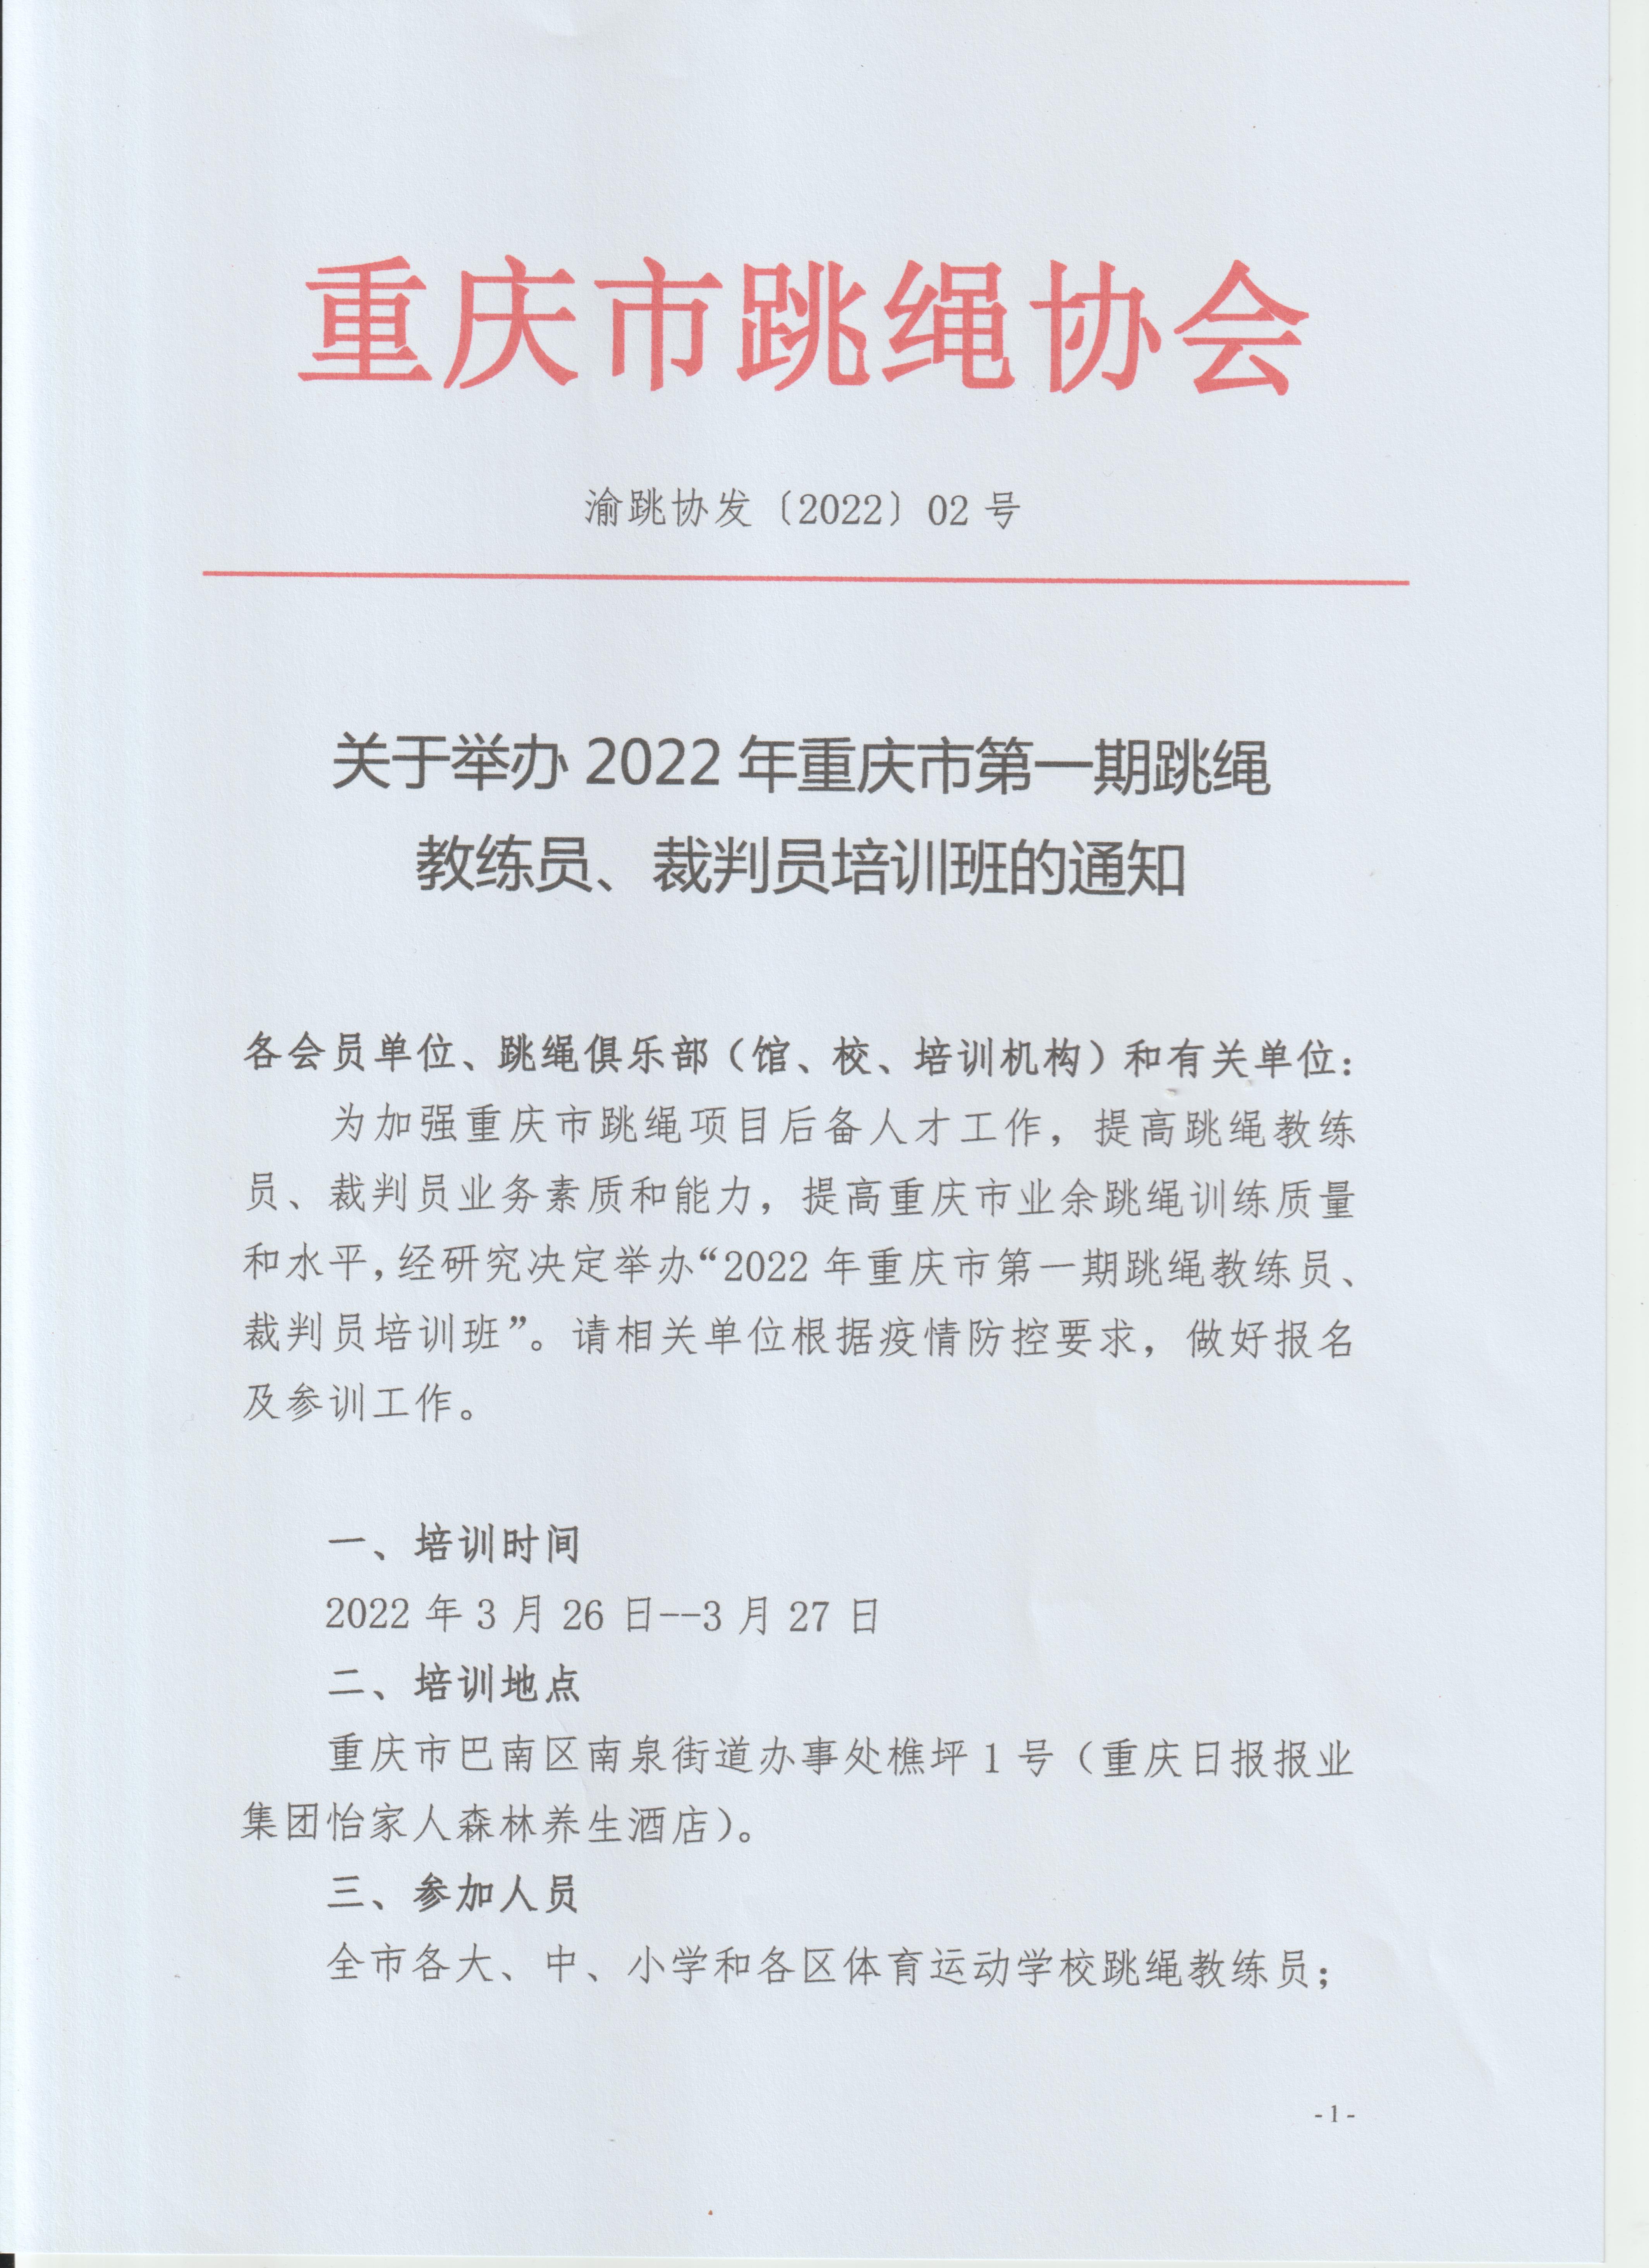 2022年重庆市第一期跳绳教练员、裁判员培训班(图1)